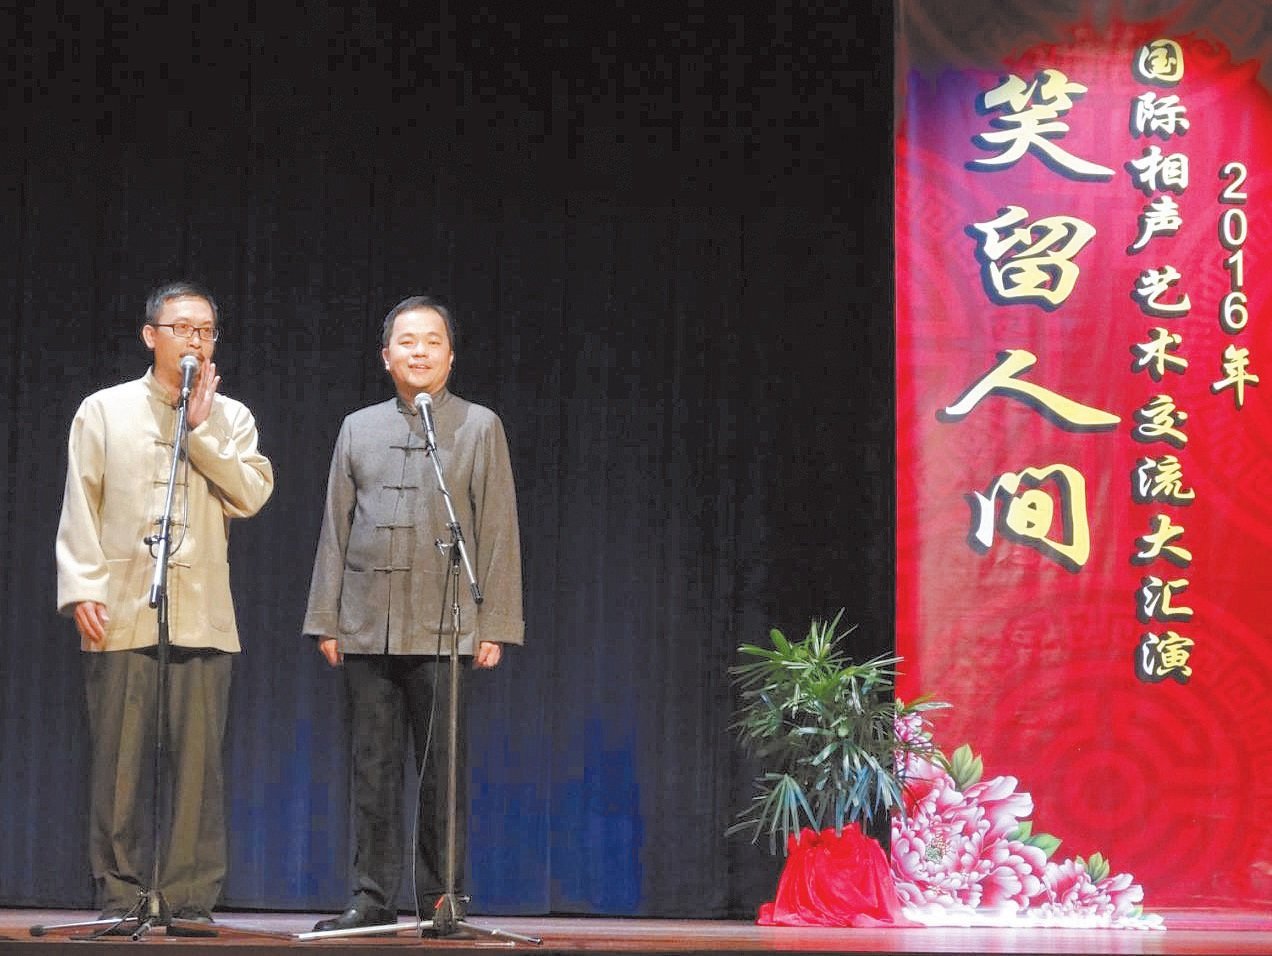 2016年国际相声艺术交流大汇演为纪念马季从艺60周年而举办，汇聚中国、台湾和本地相声大师。苏维胜搭档姚智祥（右）演出《相声玩很大》。